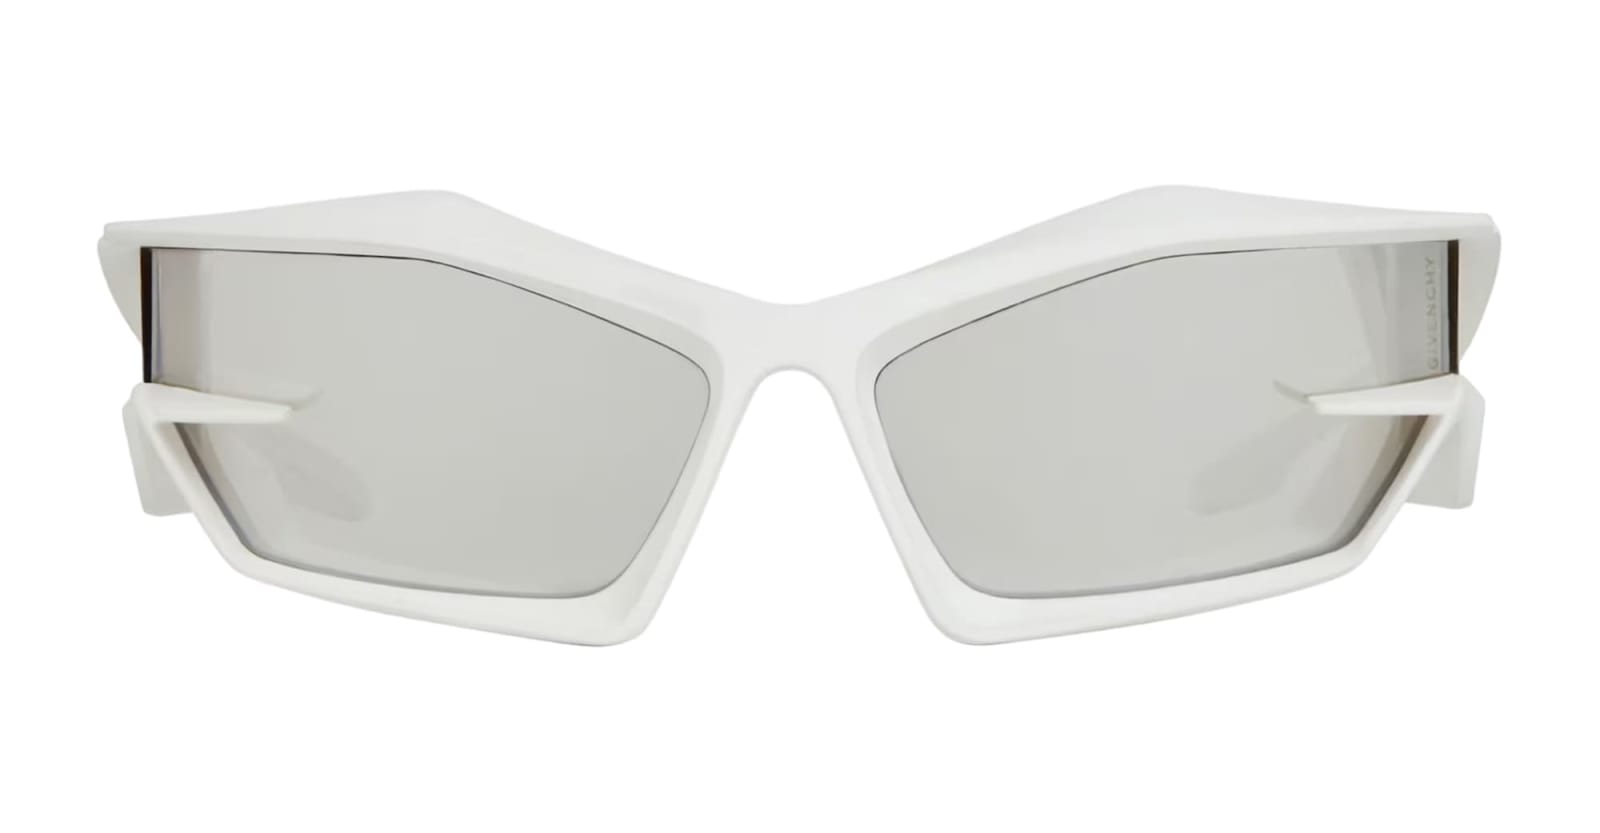 Gv40049u - White Sunglasses